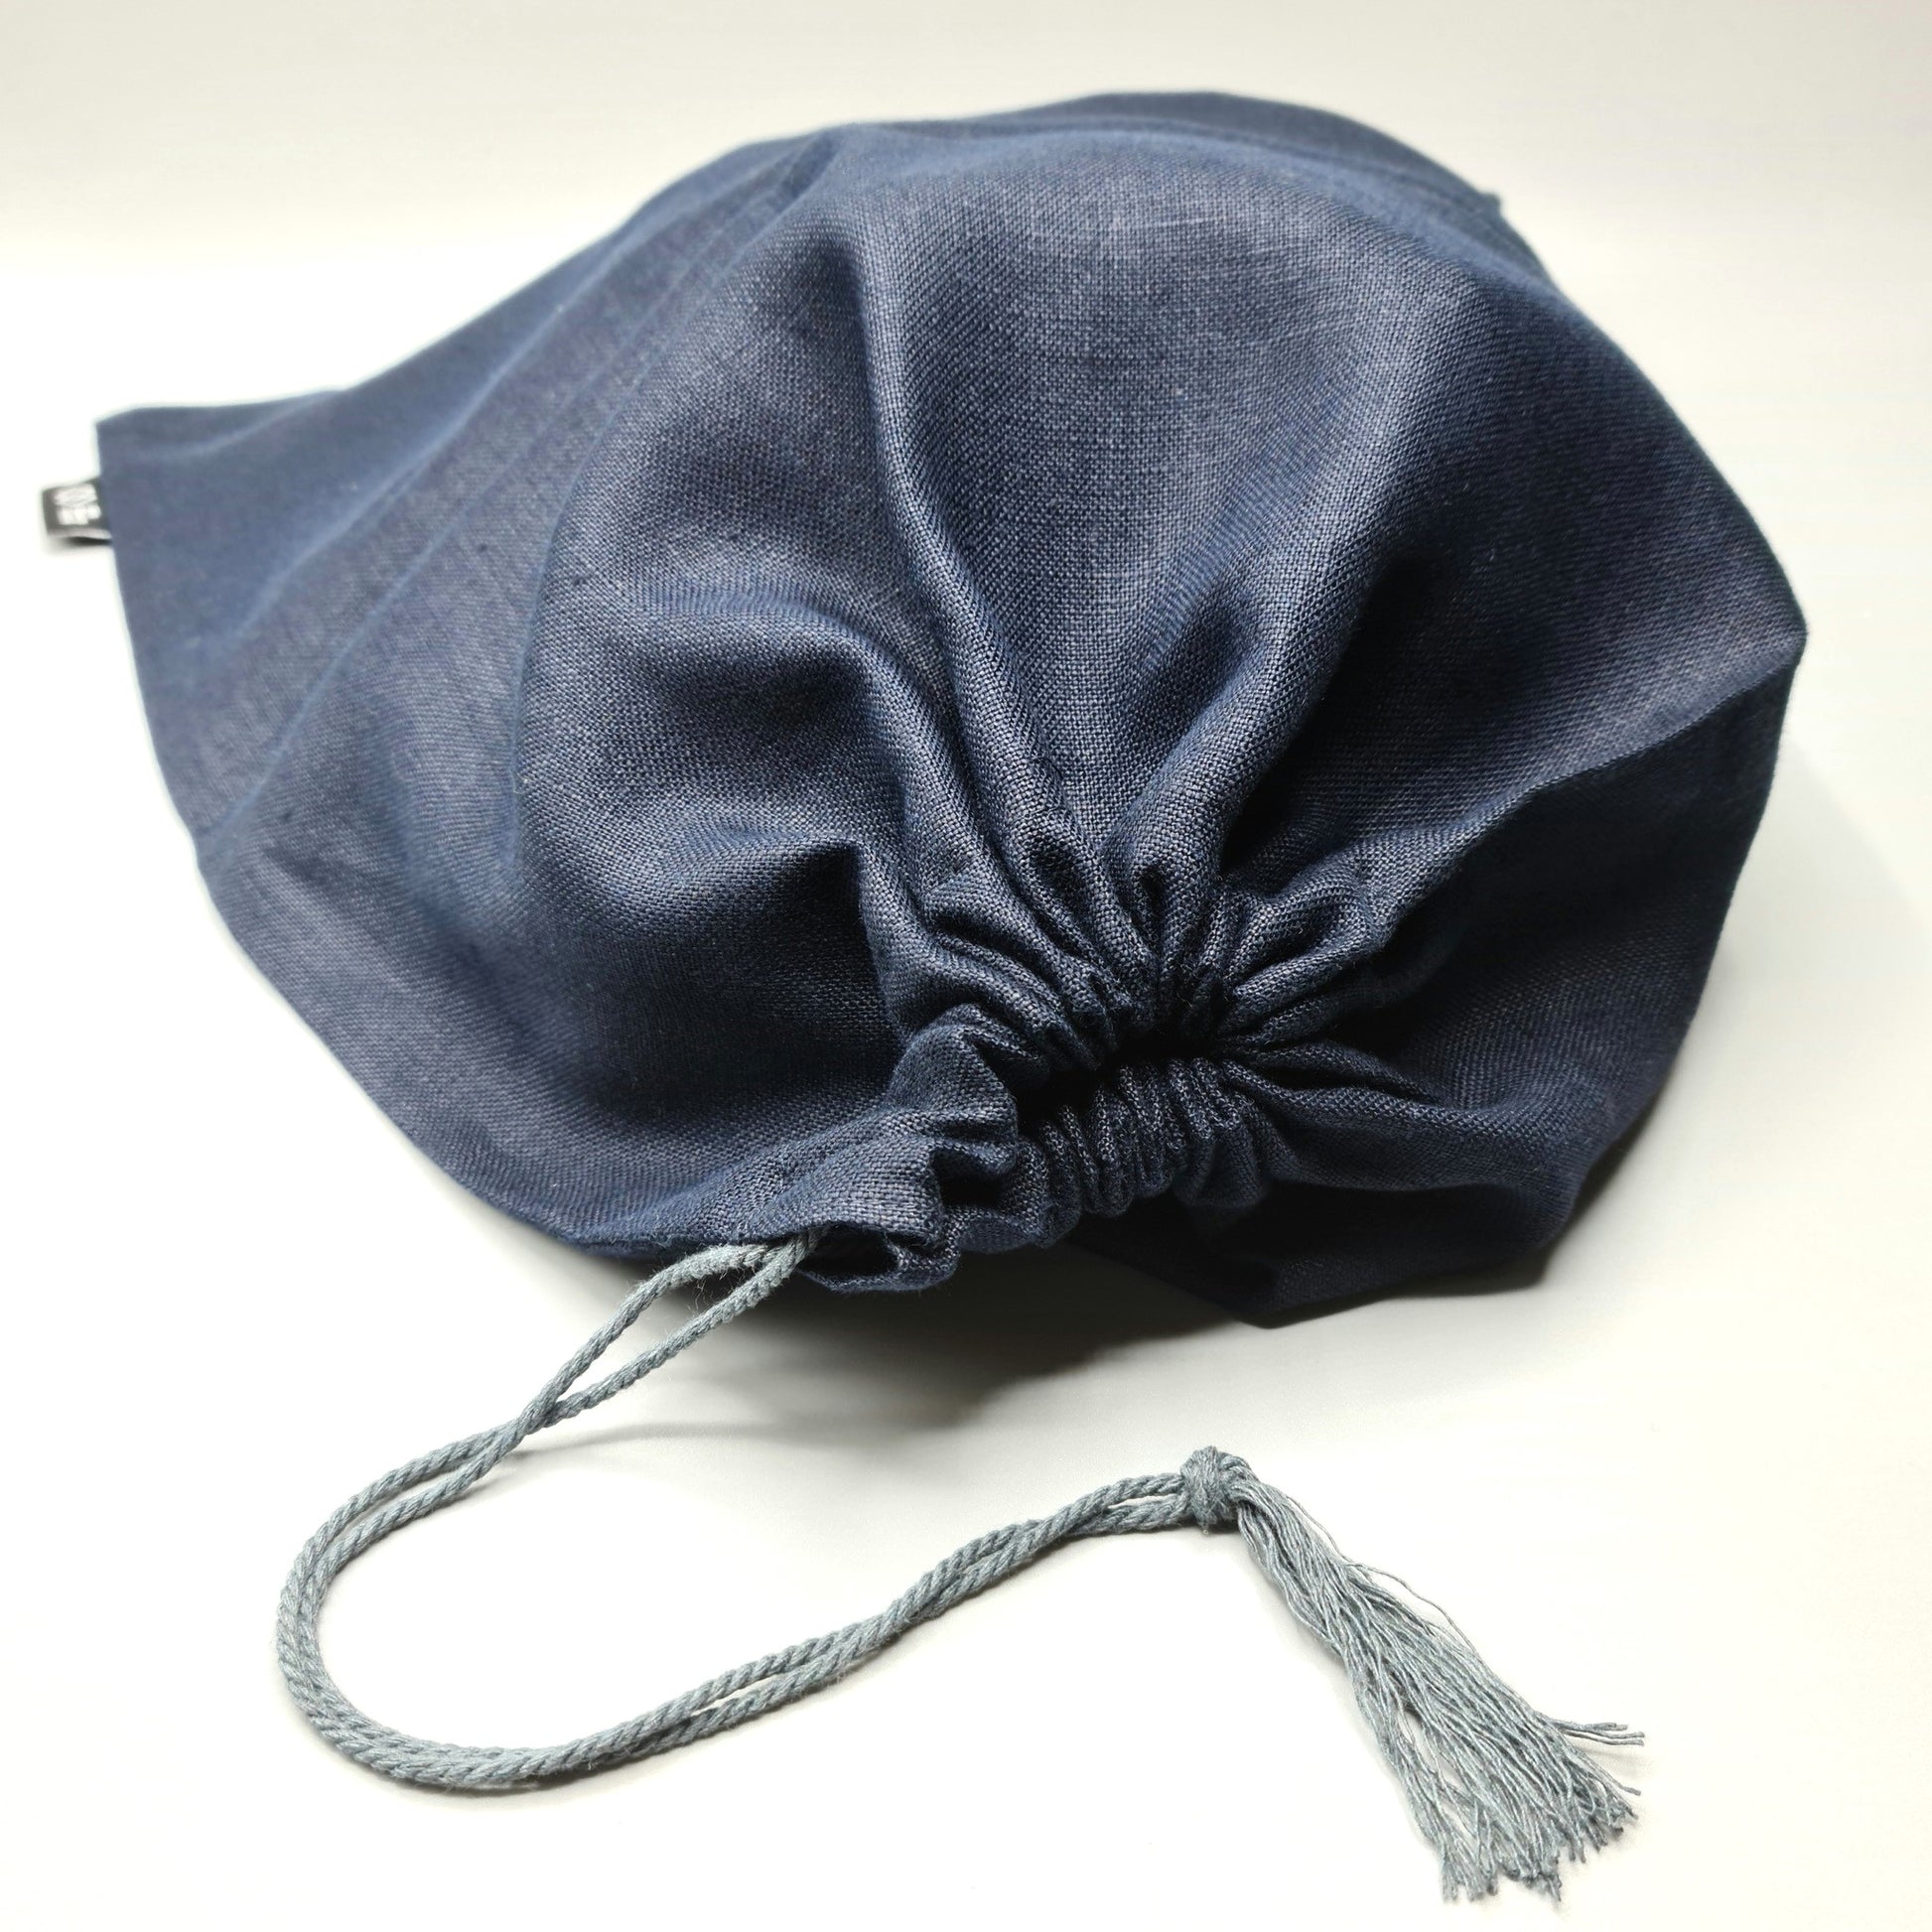 Irish Linen Drawstring Bag detail